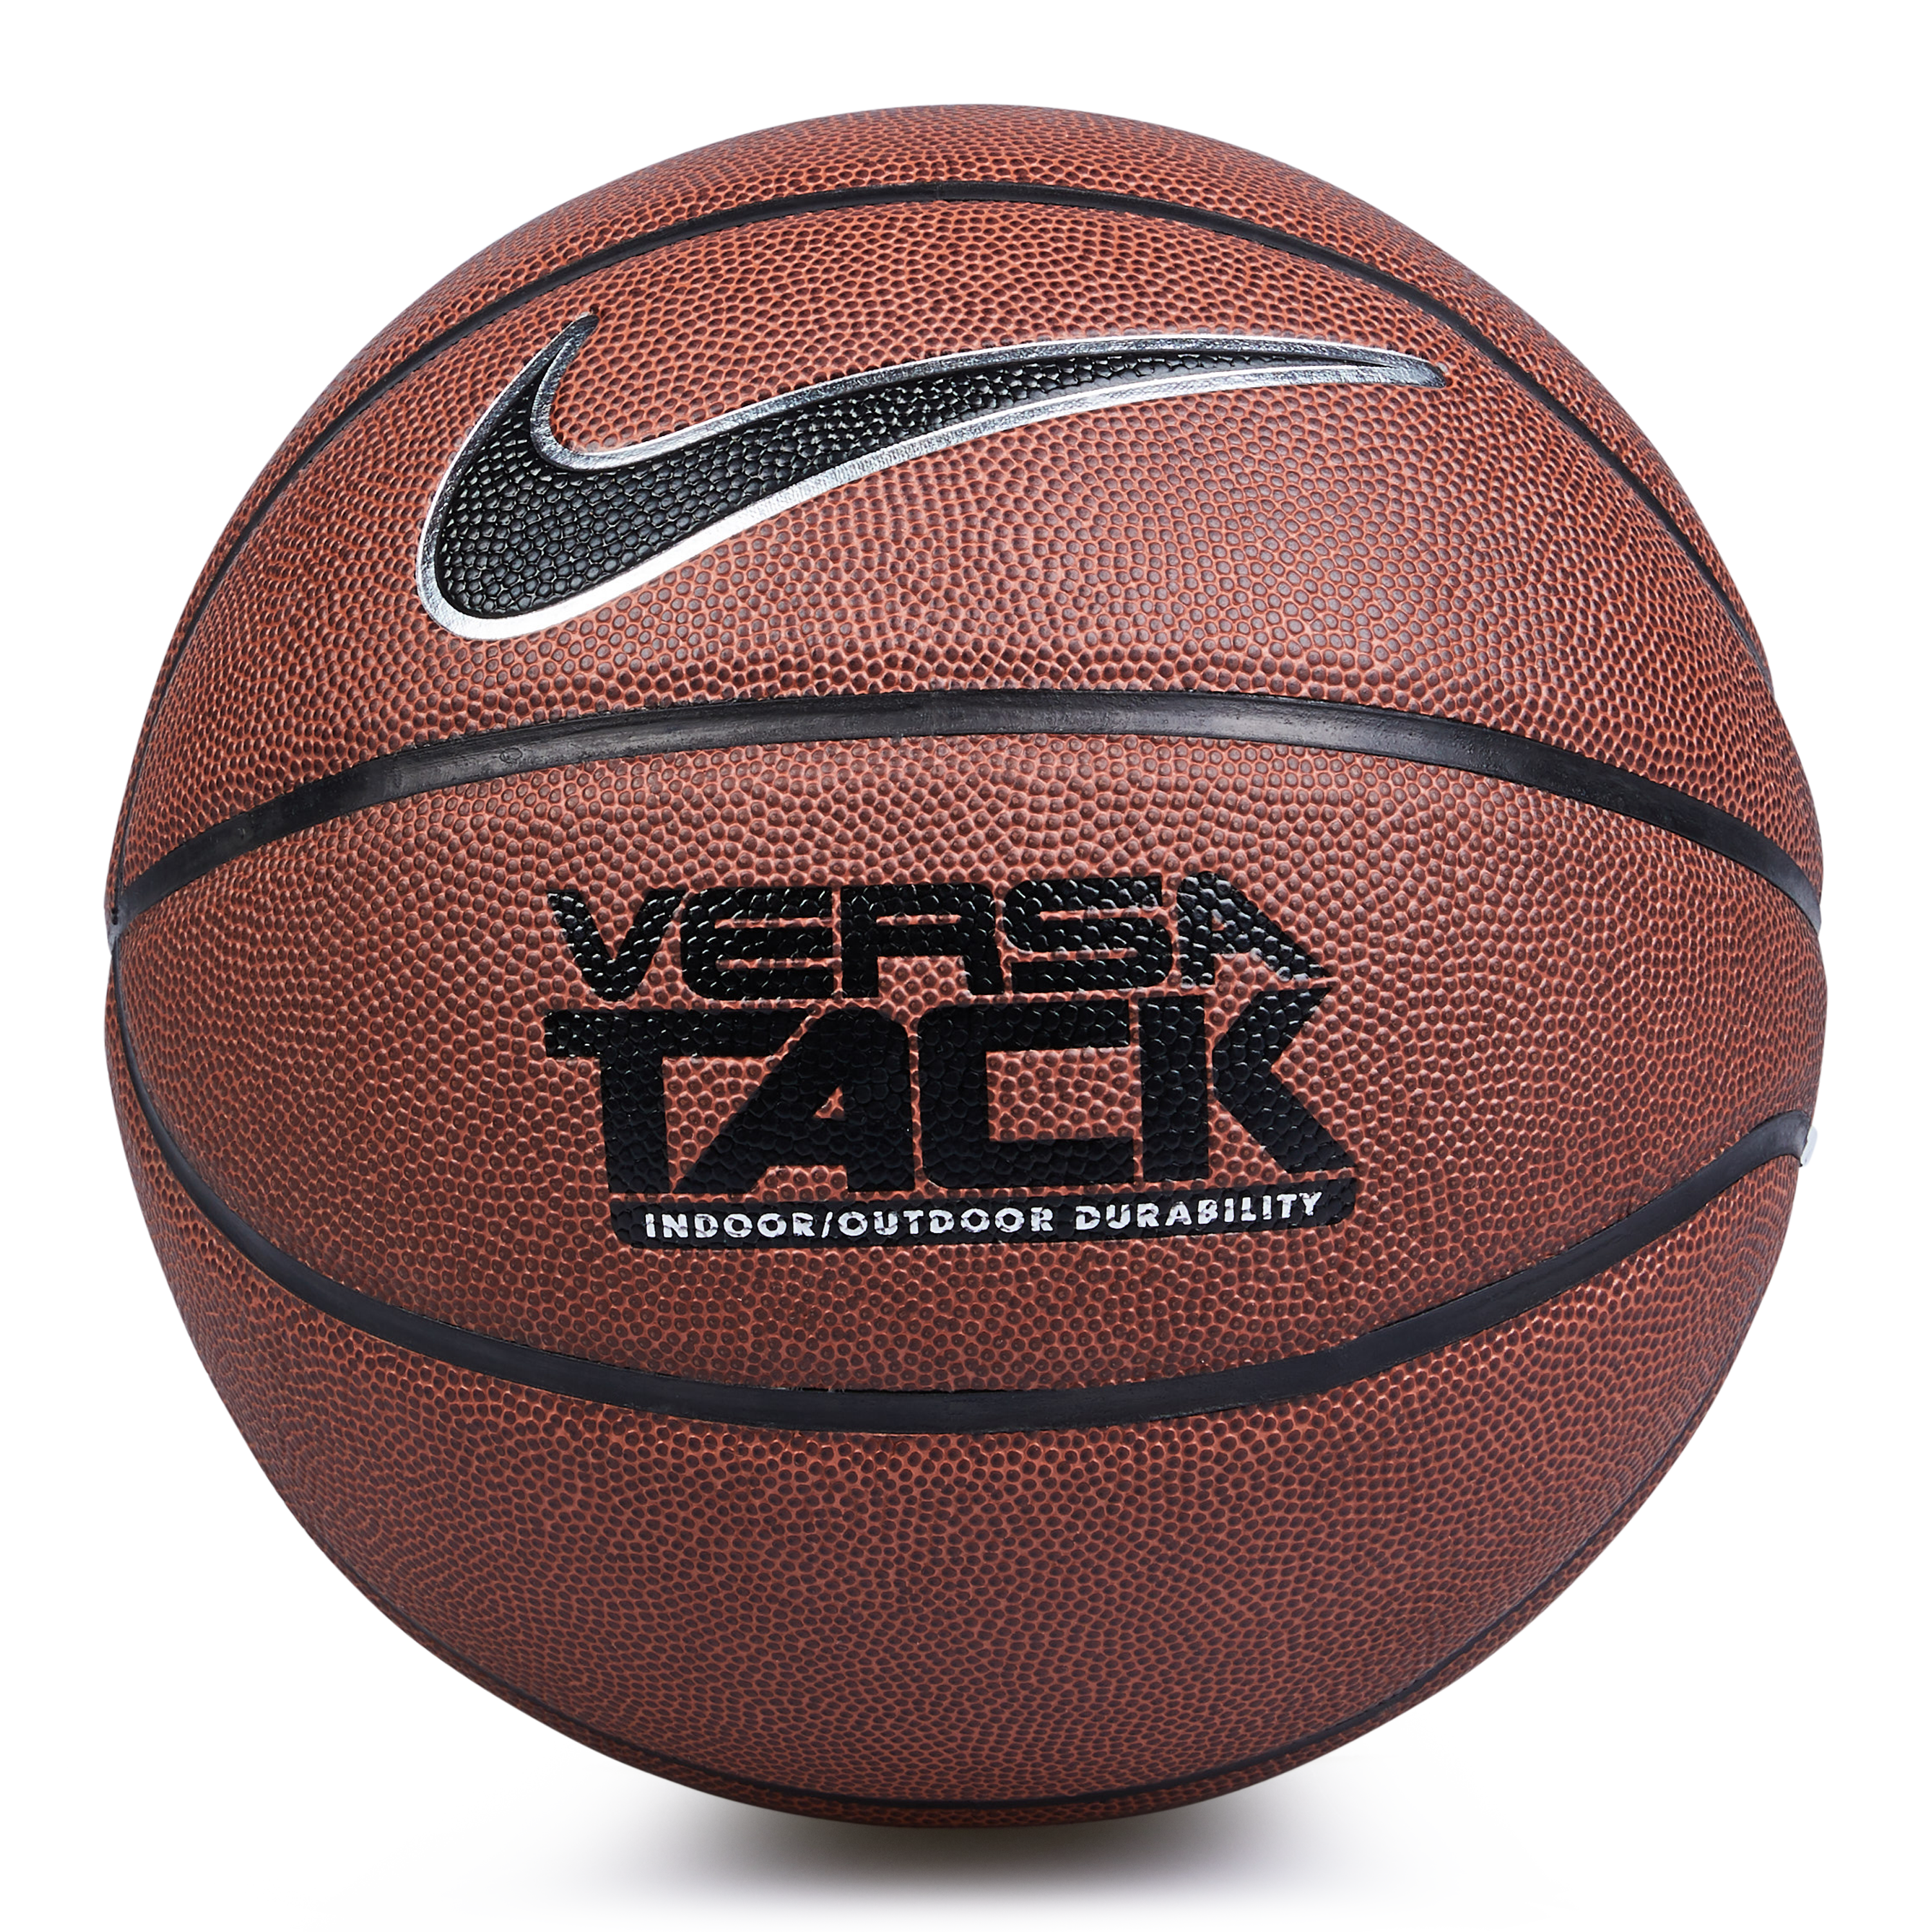 Nike Versa Tack 8P Basketball @ Footlocker